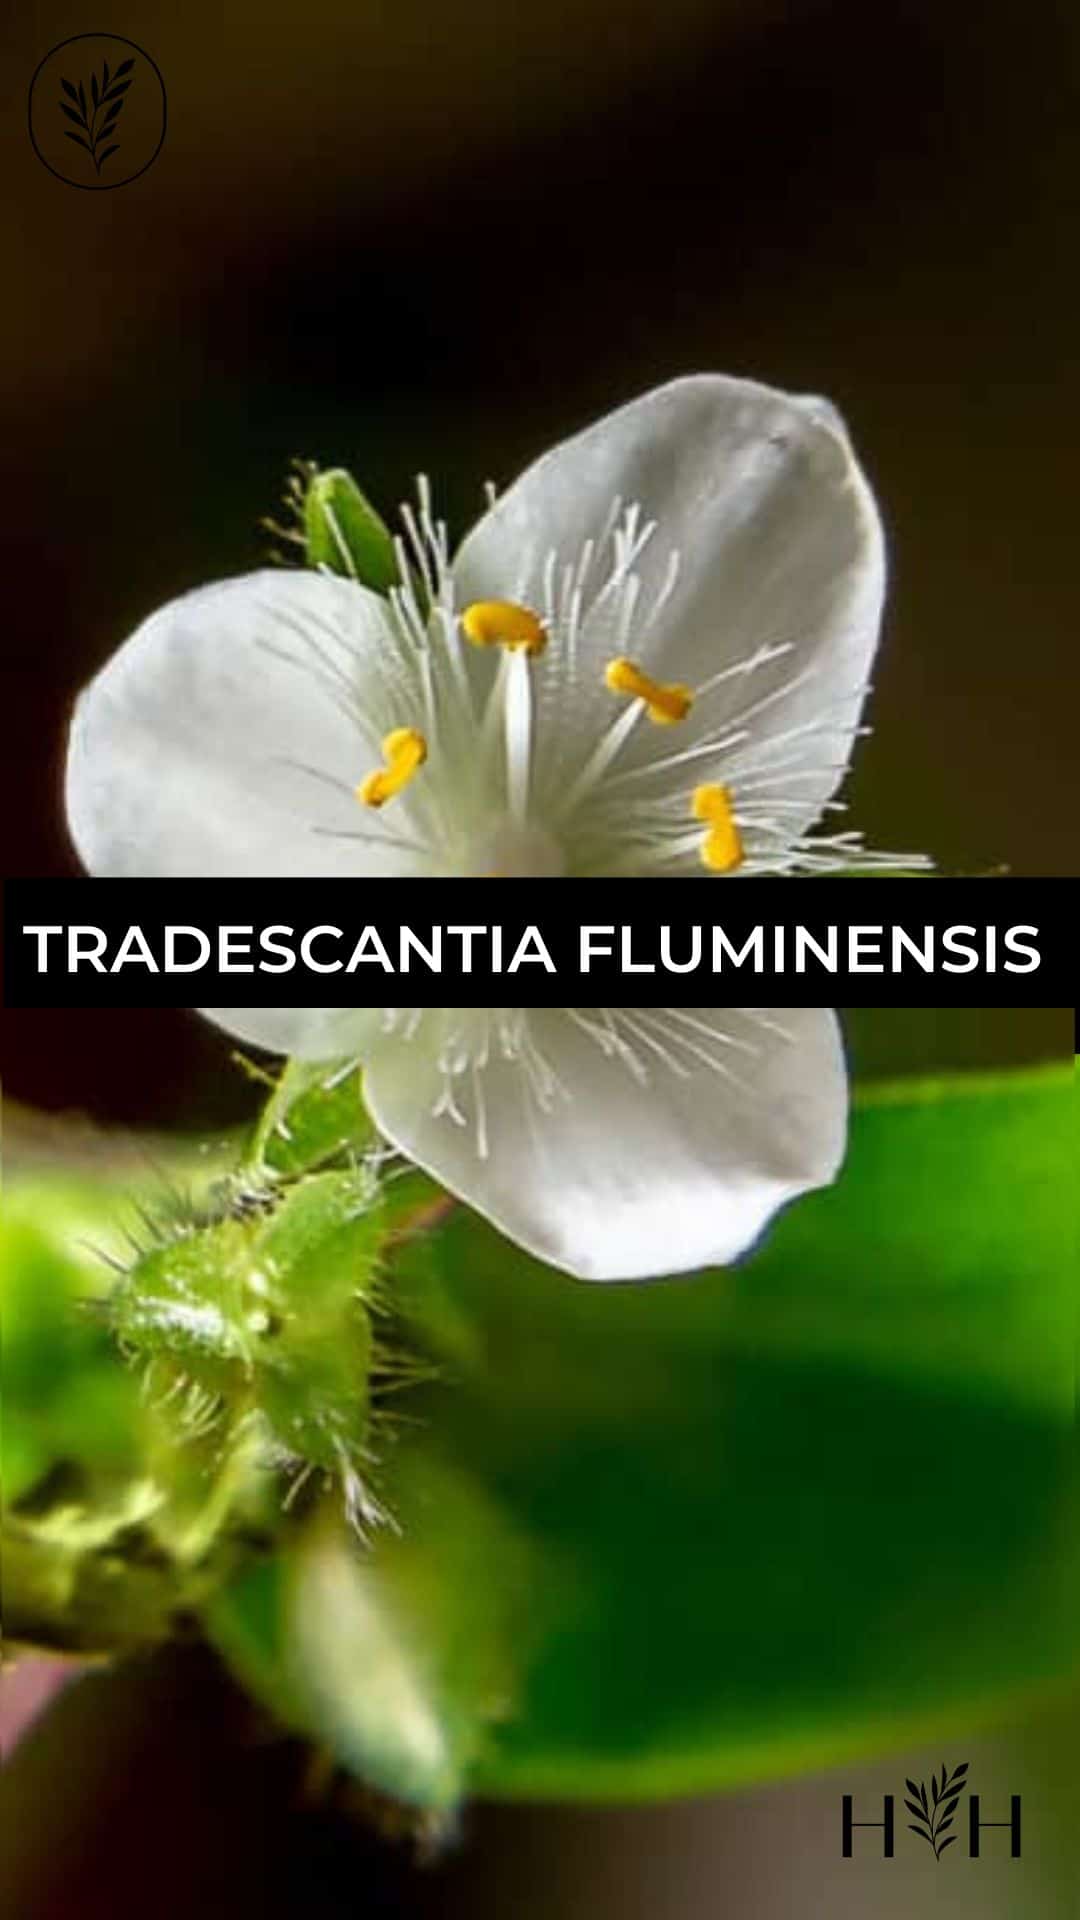 Tradescantia fluminensis via @home4theharvest